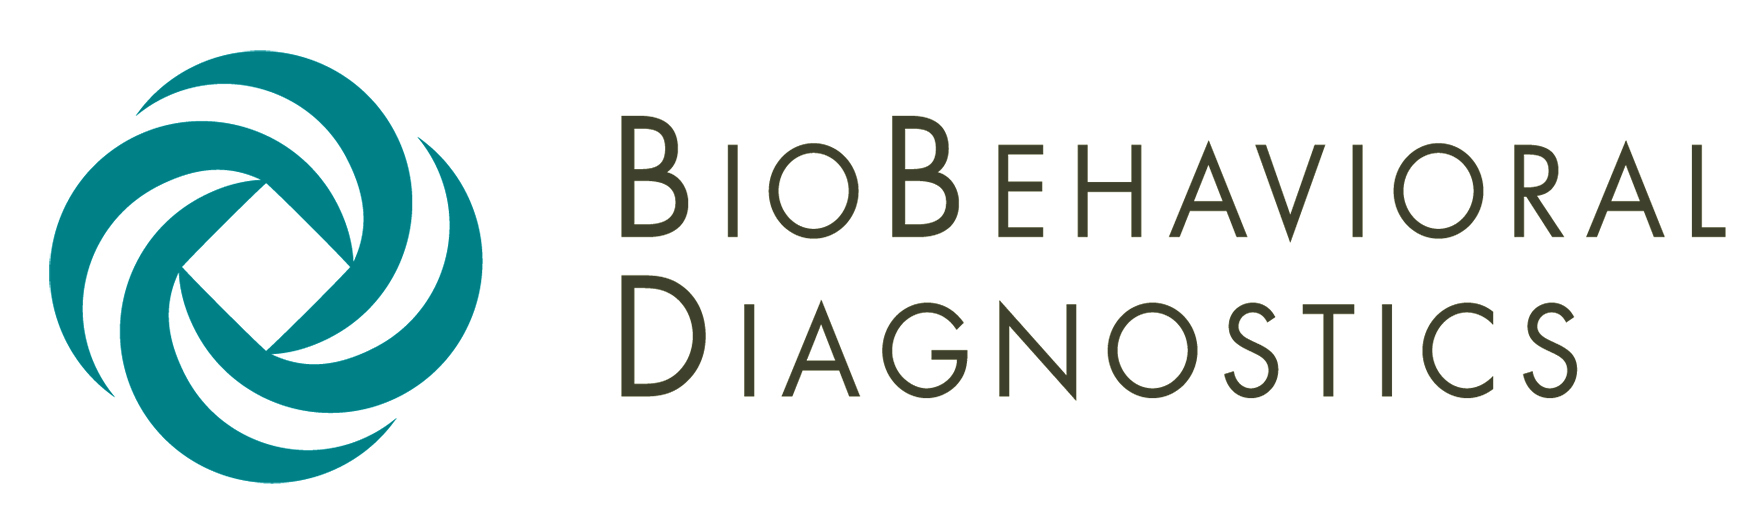 Logo Design medical, healthcare, pharma, biotech, medical diagnostics